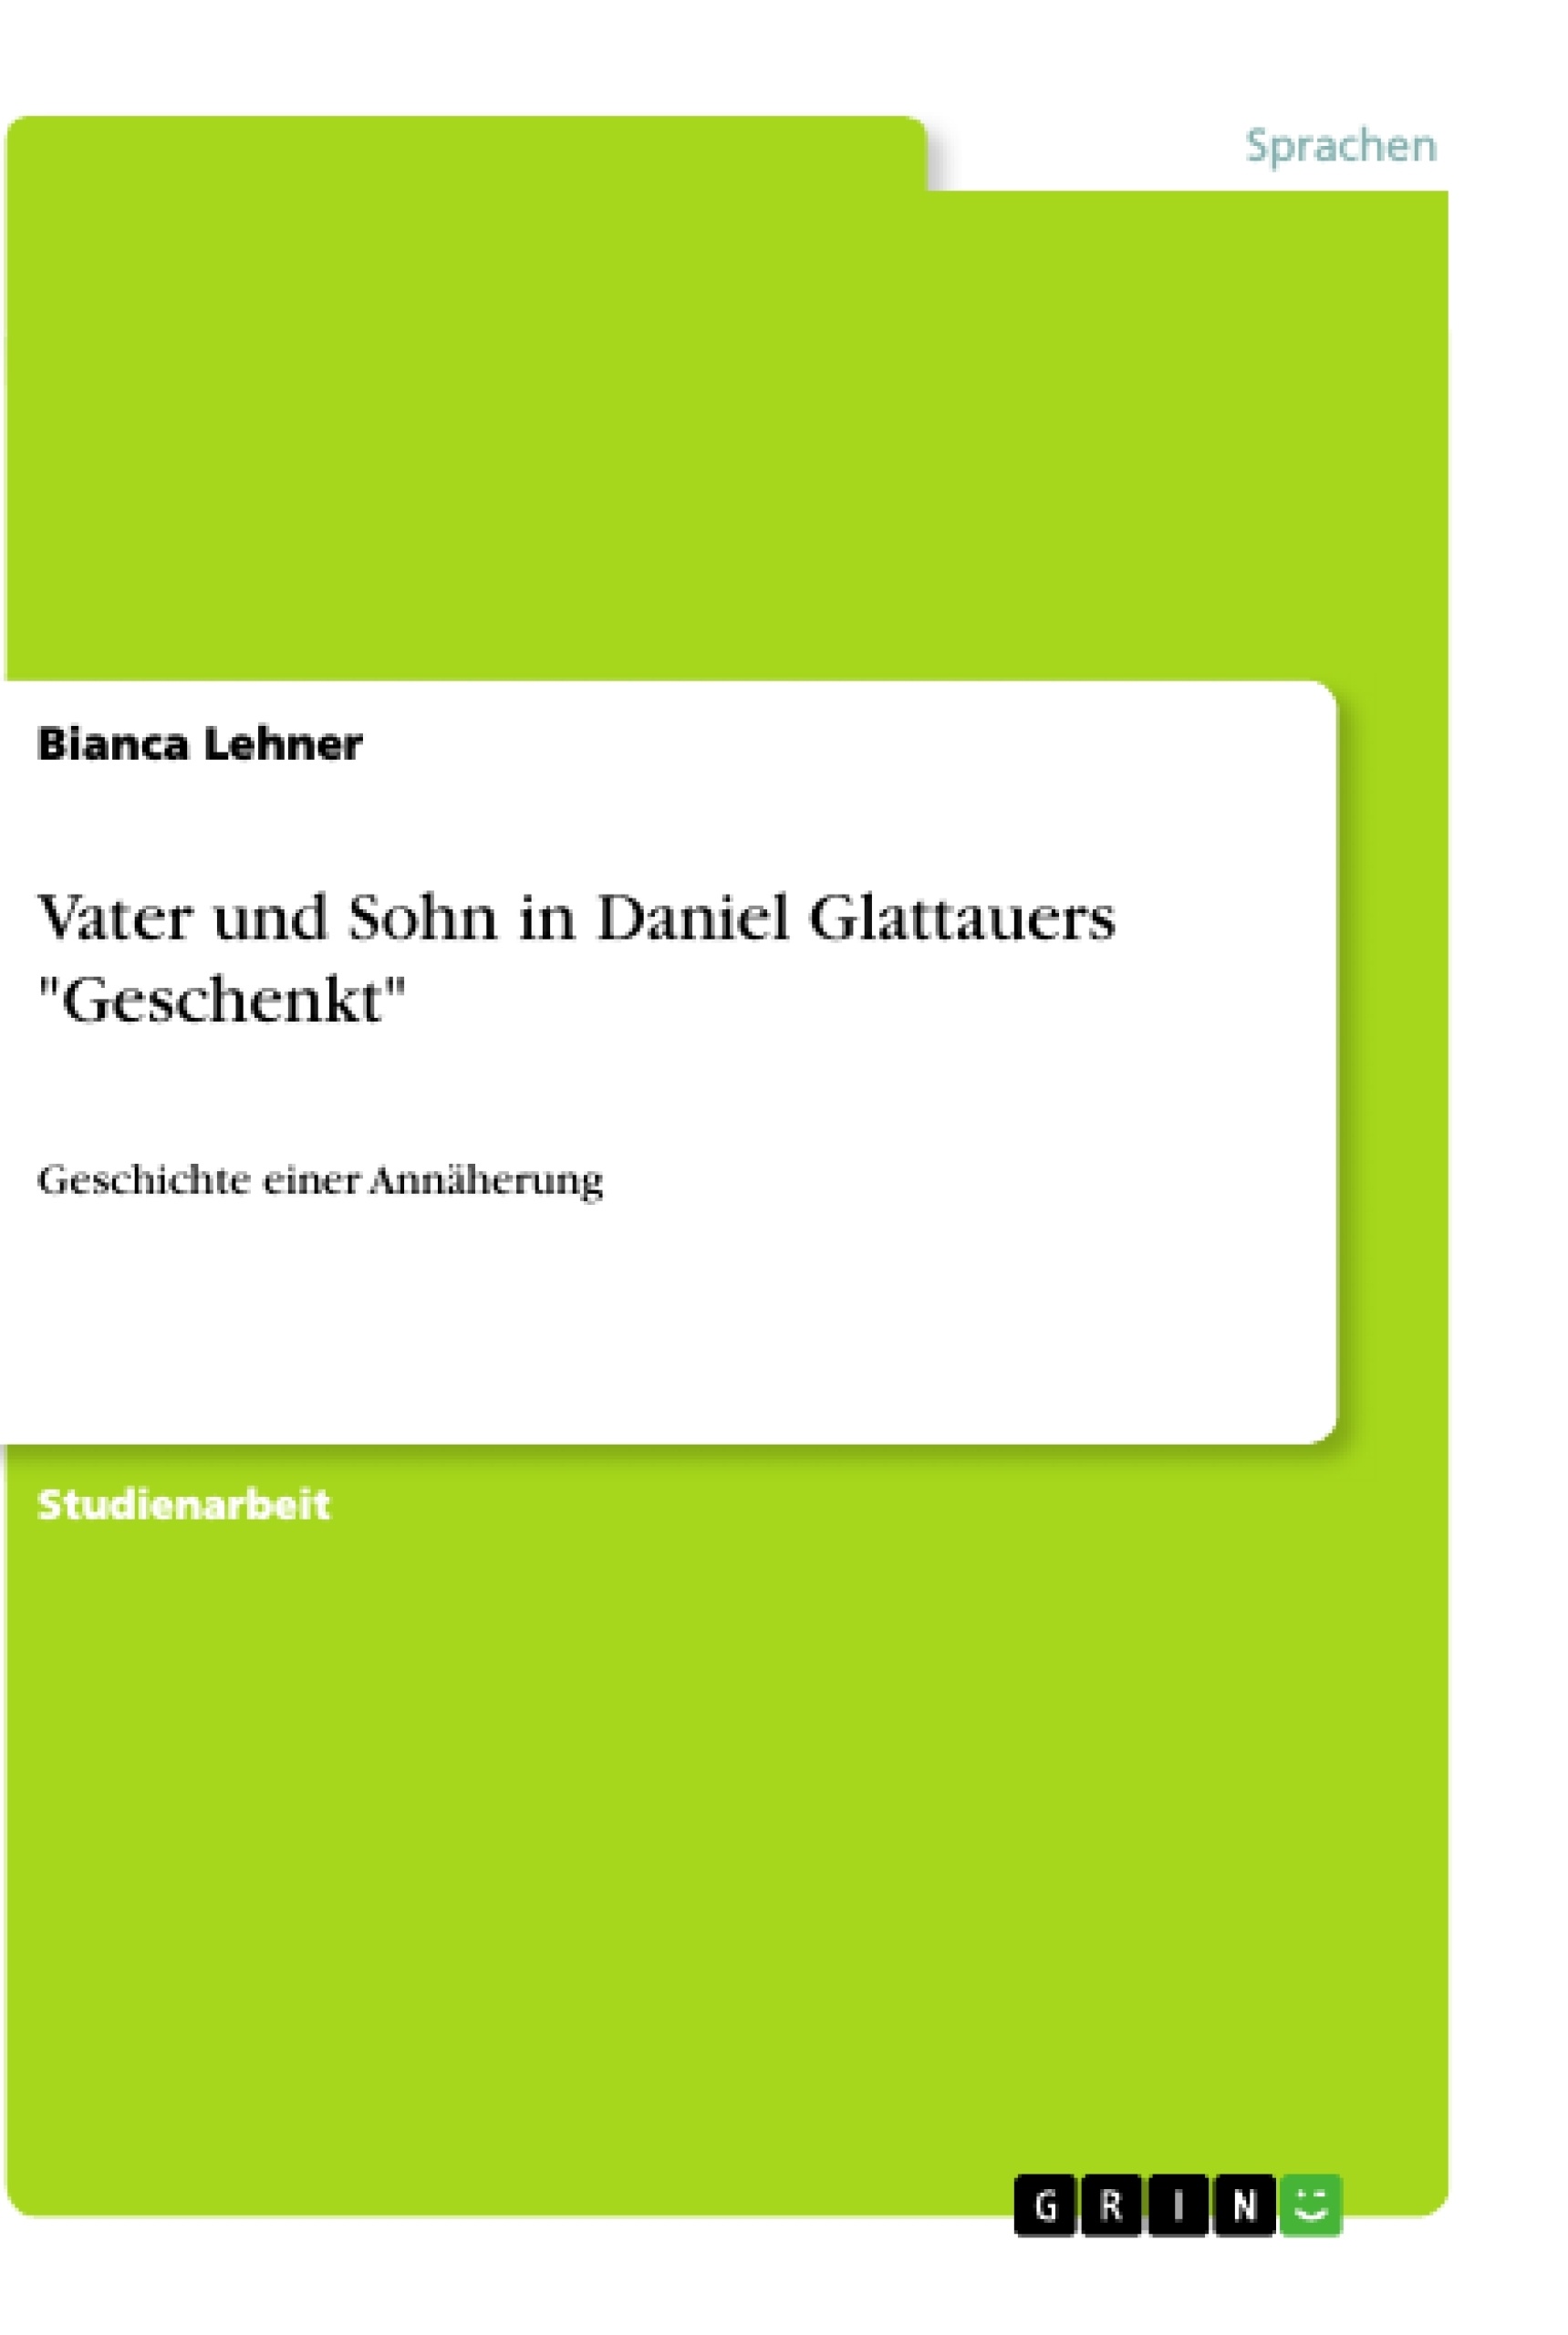 Title: Vater und Sohn in Daniel Glattauers "Geschenkt"